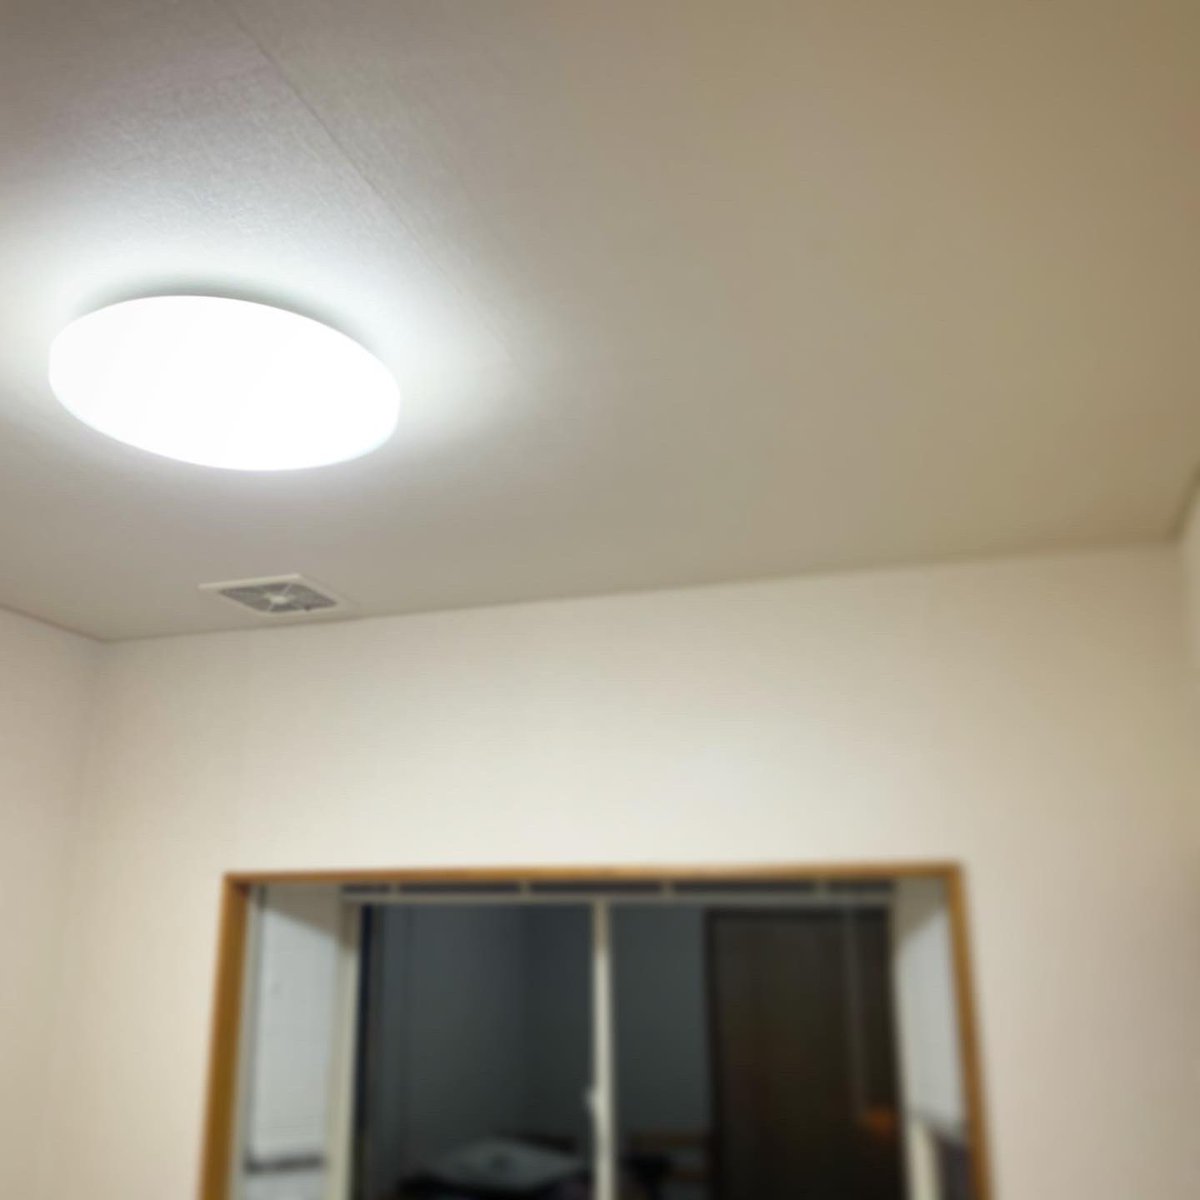 飛行機スタジオ ナリタリア公式 Naritalia 支度部屋 の照明が点灯不良で バルブ交換 したけどチカチカ 安定器の故障ですかね 近所のホームセンターで Ledシーリングライトを買いました ギリギリ間にあった 蛍光灯 Led スタジオ T